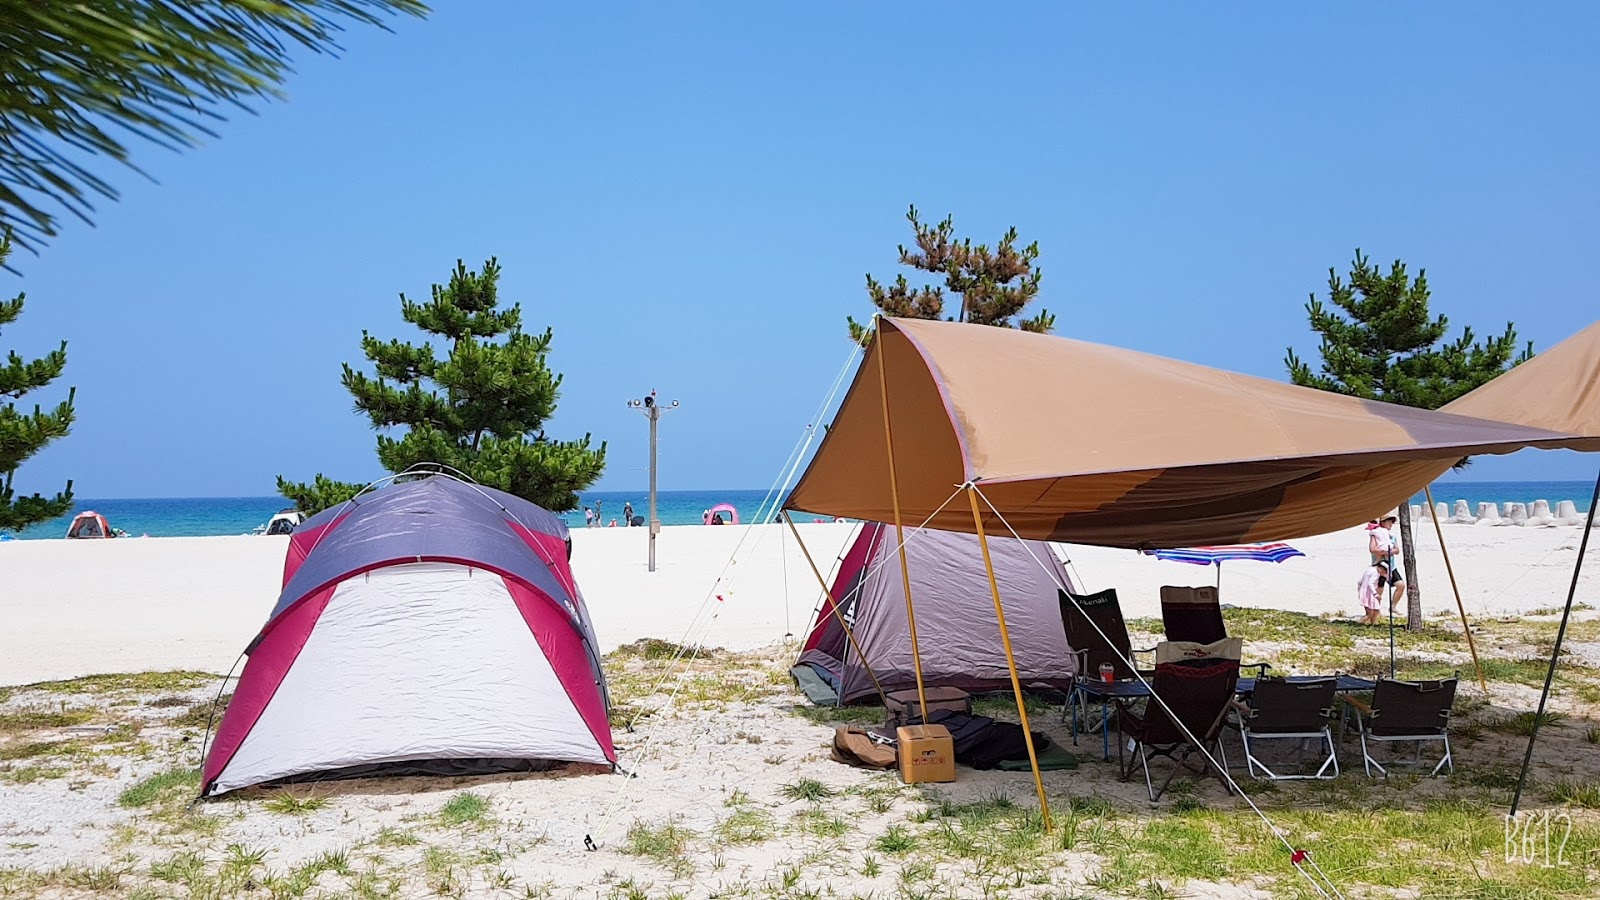 Fotografie cu Sampo Beach - locul popular printre cunoscătorii de relaxare